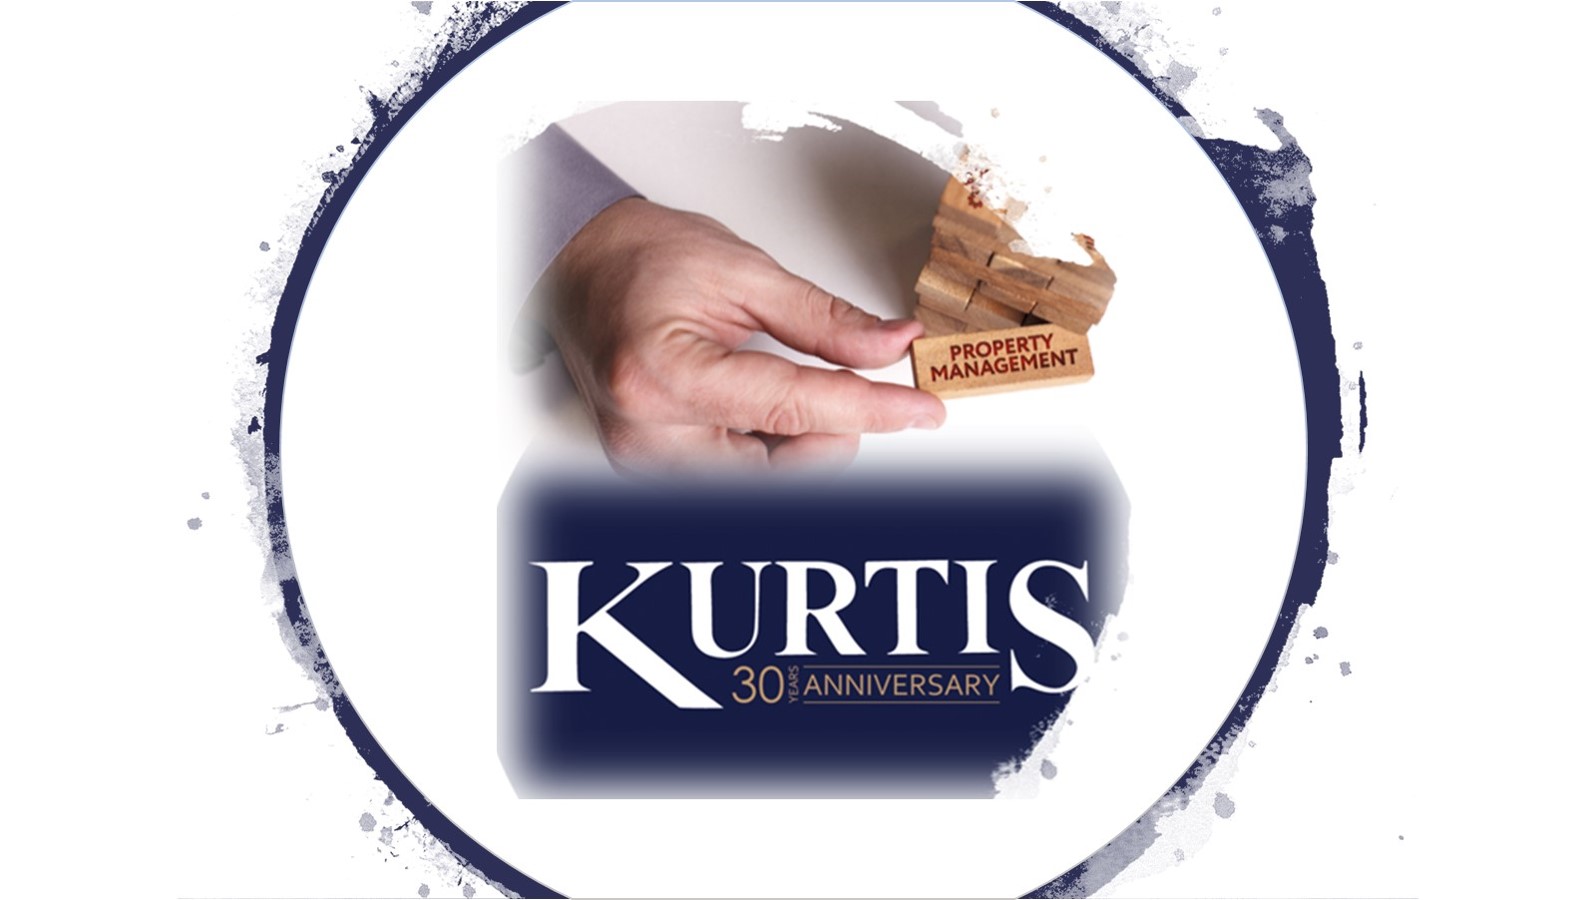 Kurtis Property Management